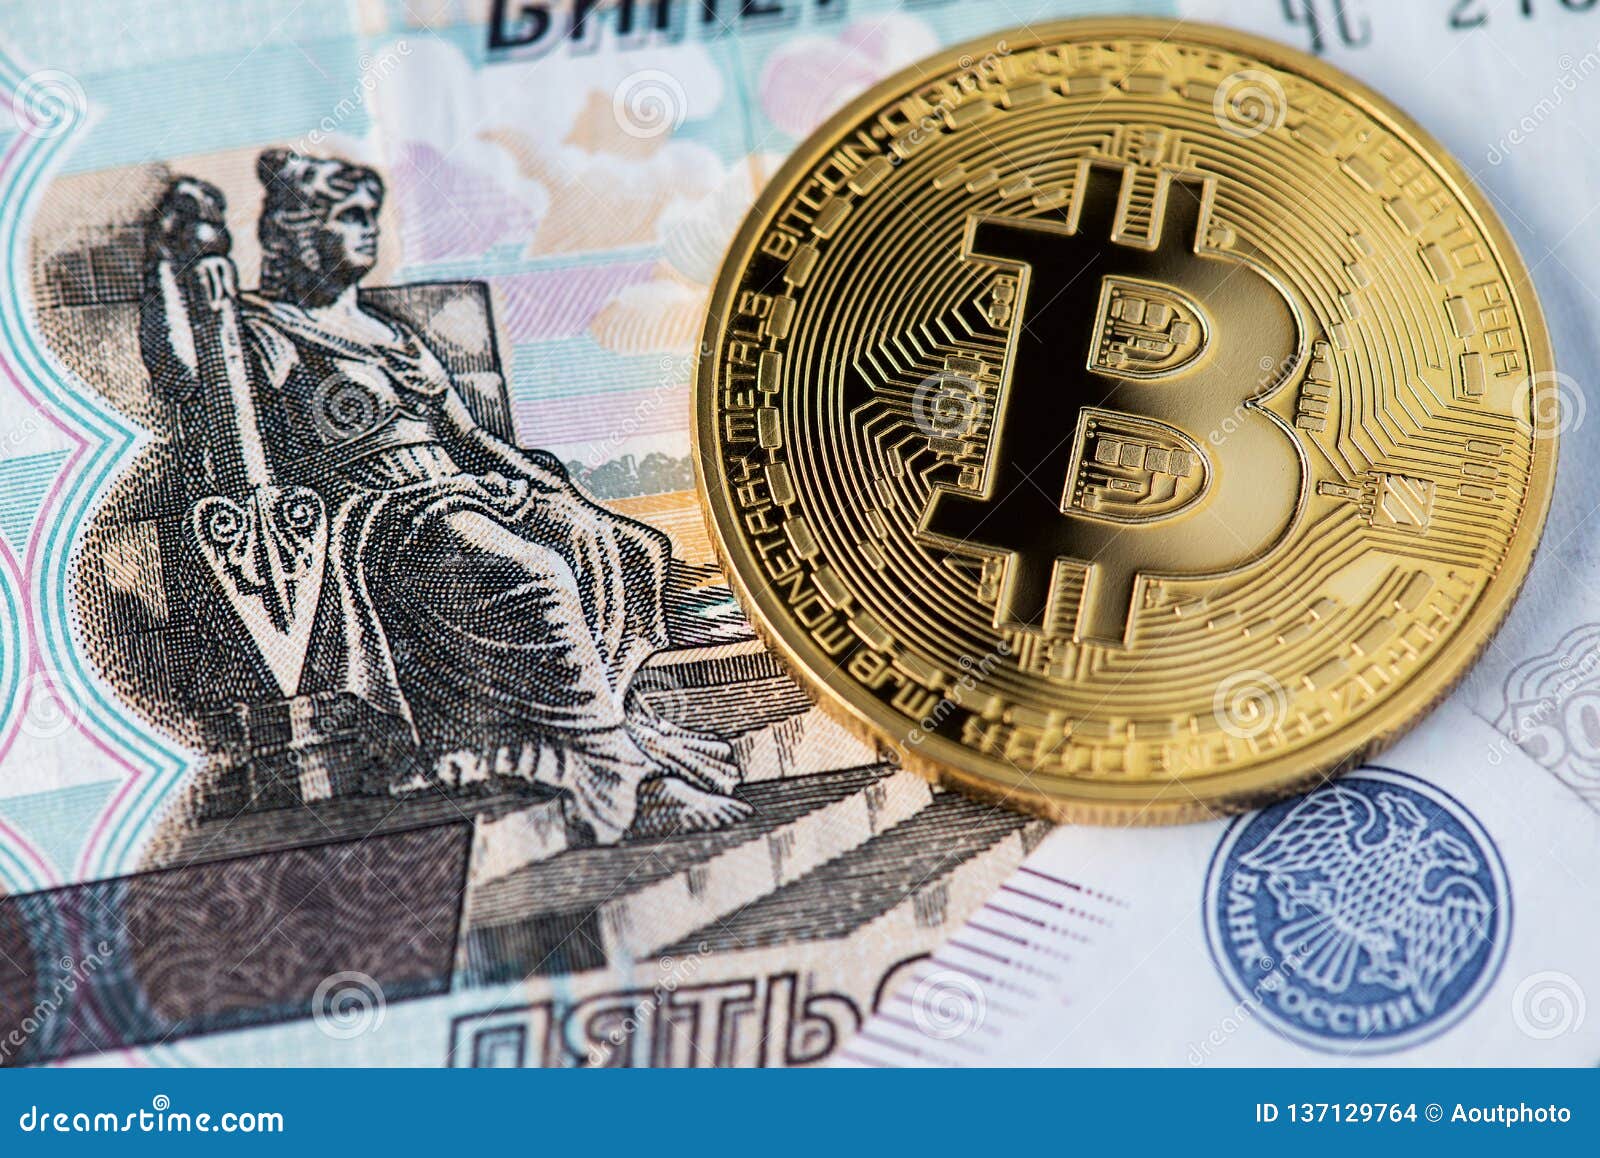 bitcoin ruble